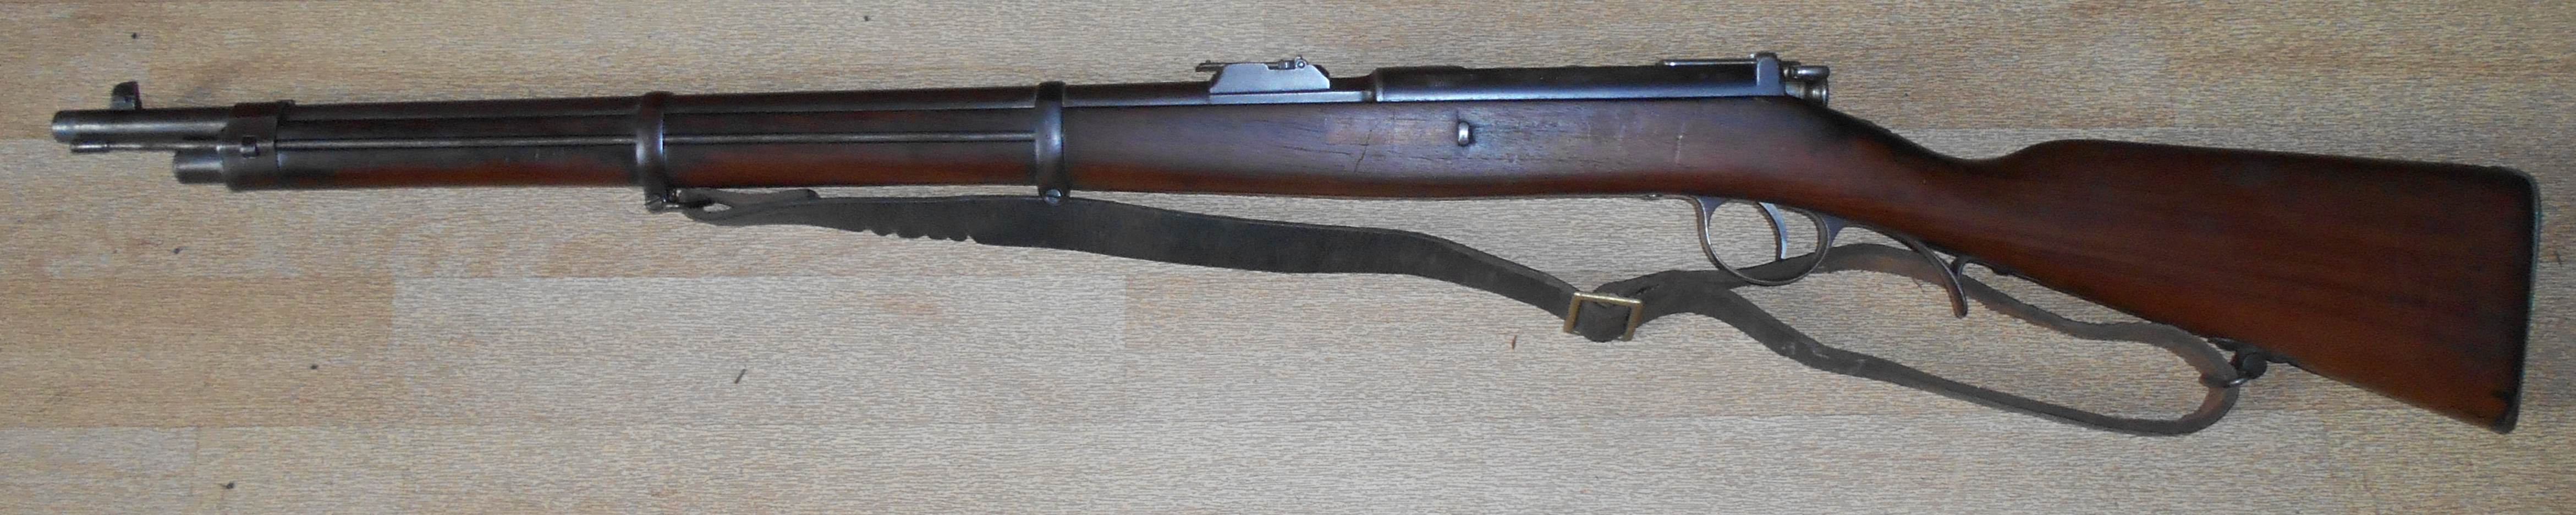 Kropatschek  Mle 1886 (carabine)